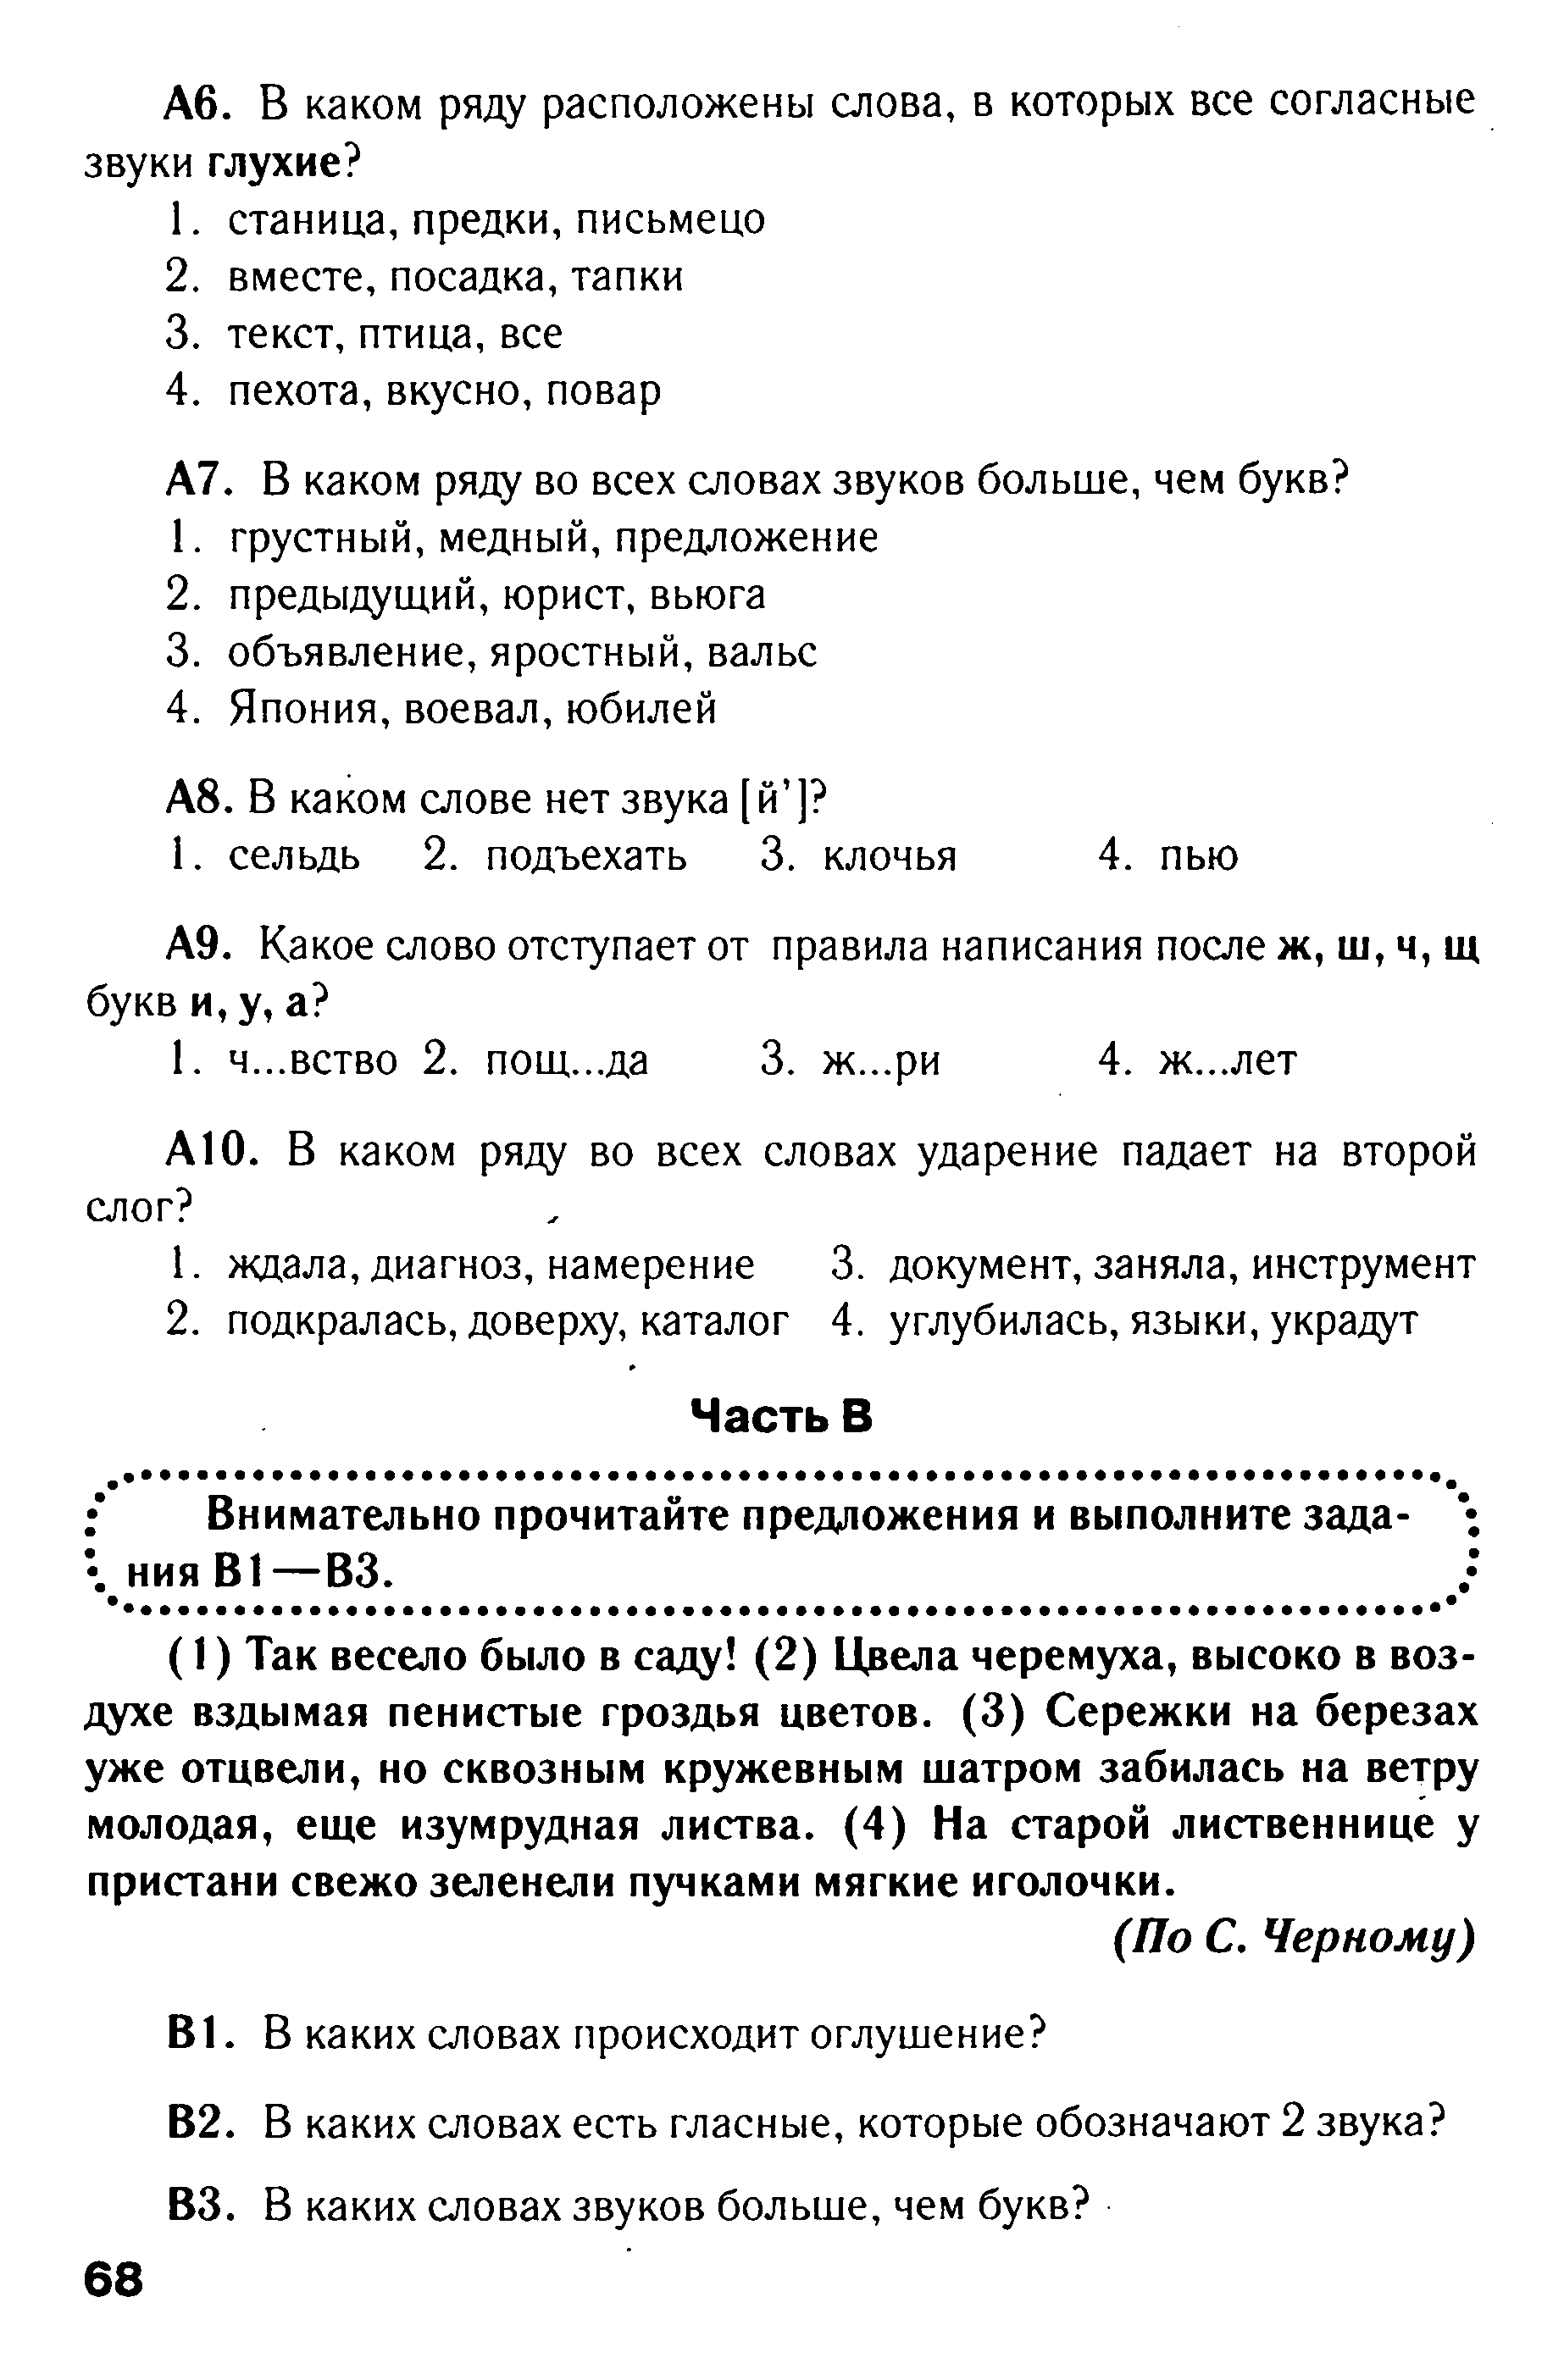 Тест по русскому языку в формате ГИА на тему Фонетика вариант 2